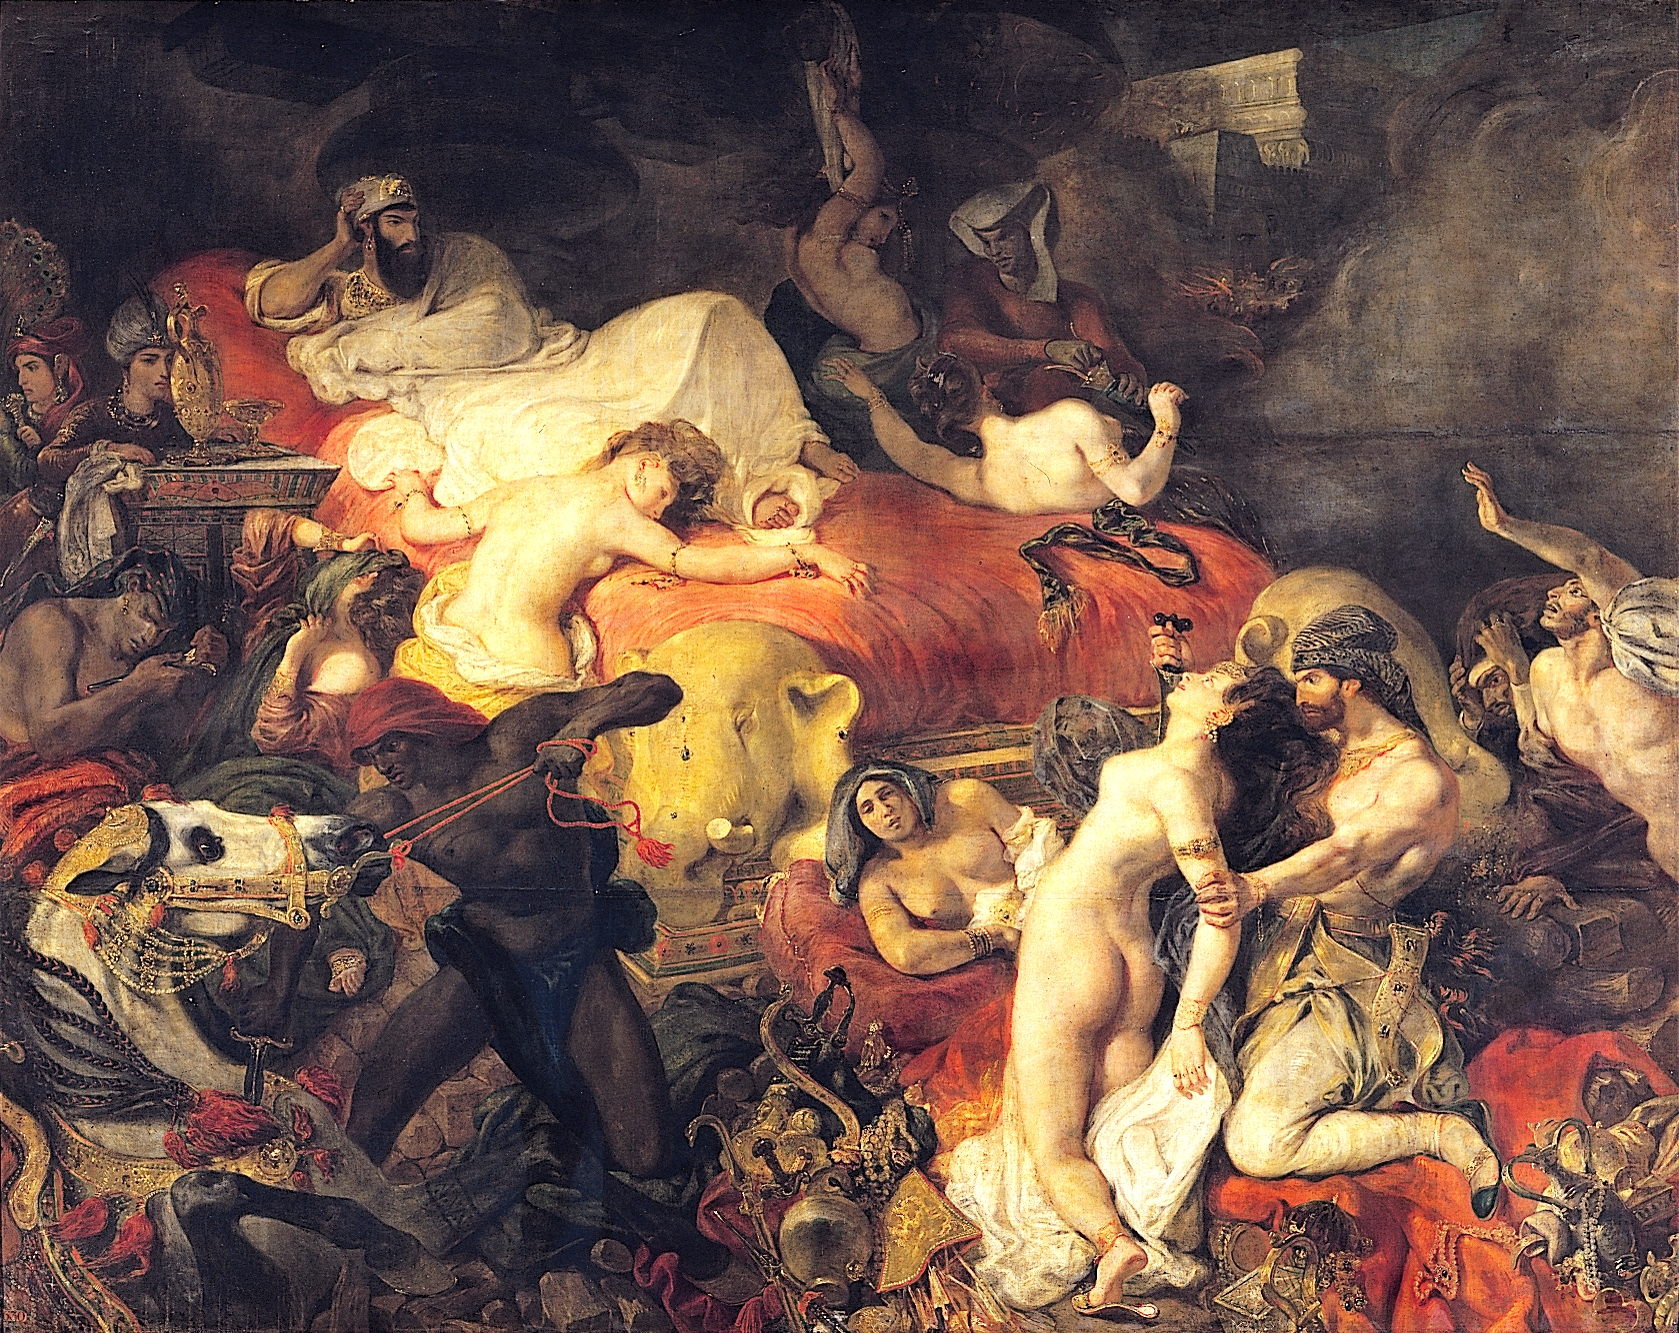 La mort de Sardanapale by Eugène Delacroix - 1827 - 392 x 496 cm Musée du Louvre